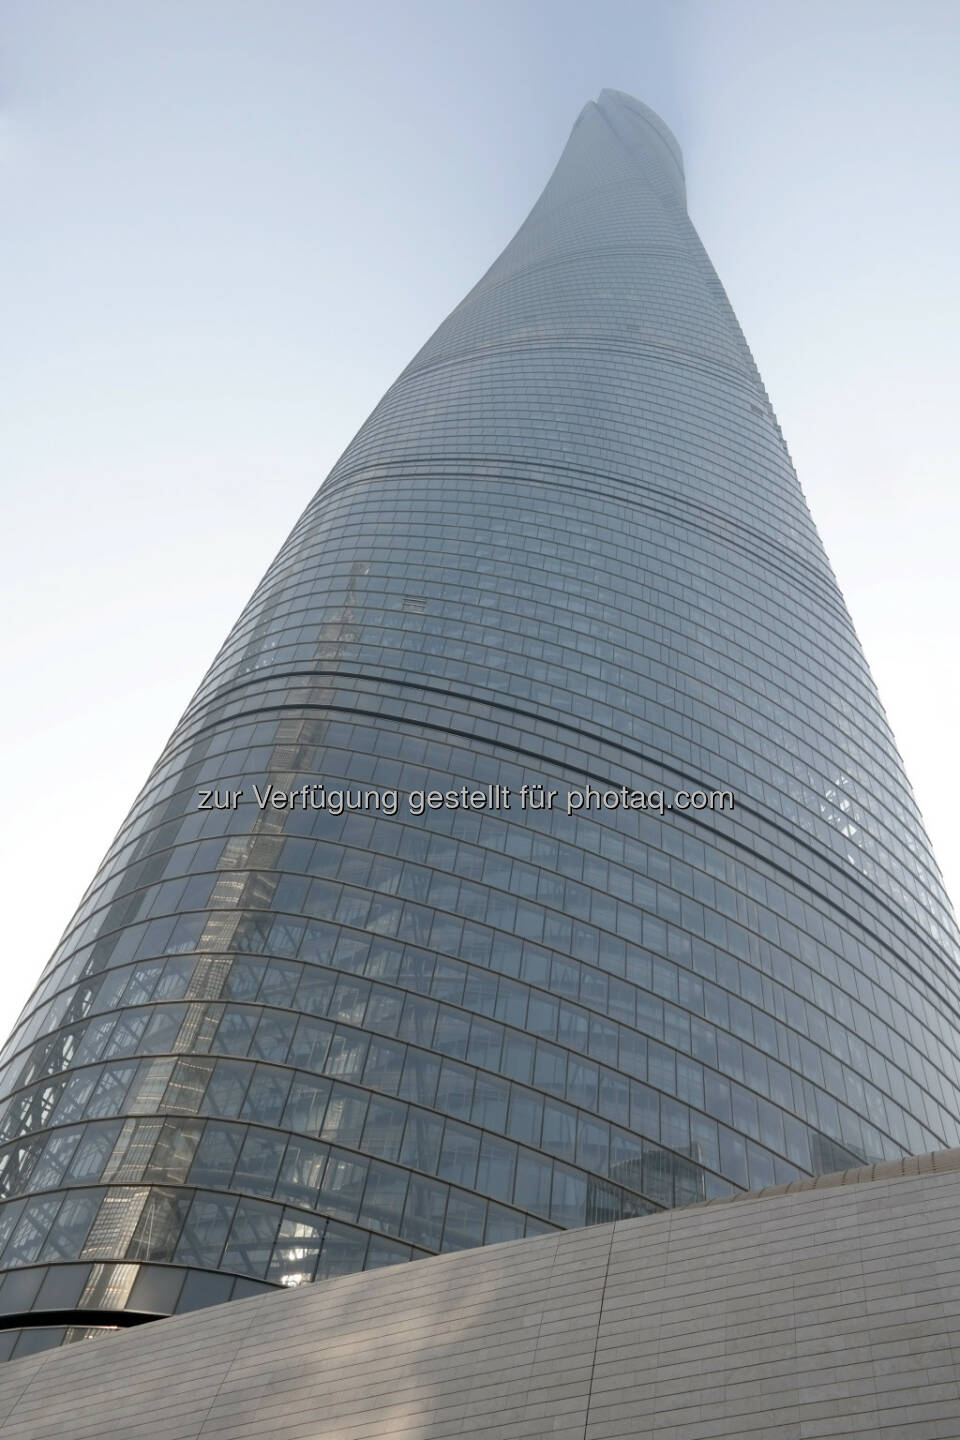 Kolarz erleuchtet Chinas höchsten Turm mit visionärem Licht-Design - Shanghai Tower erstrahlt in österreichischem Licht (Bild: Kolarz GmbH)